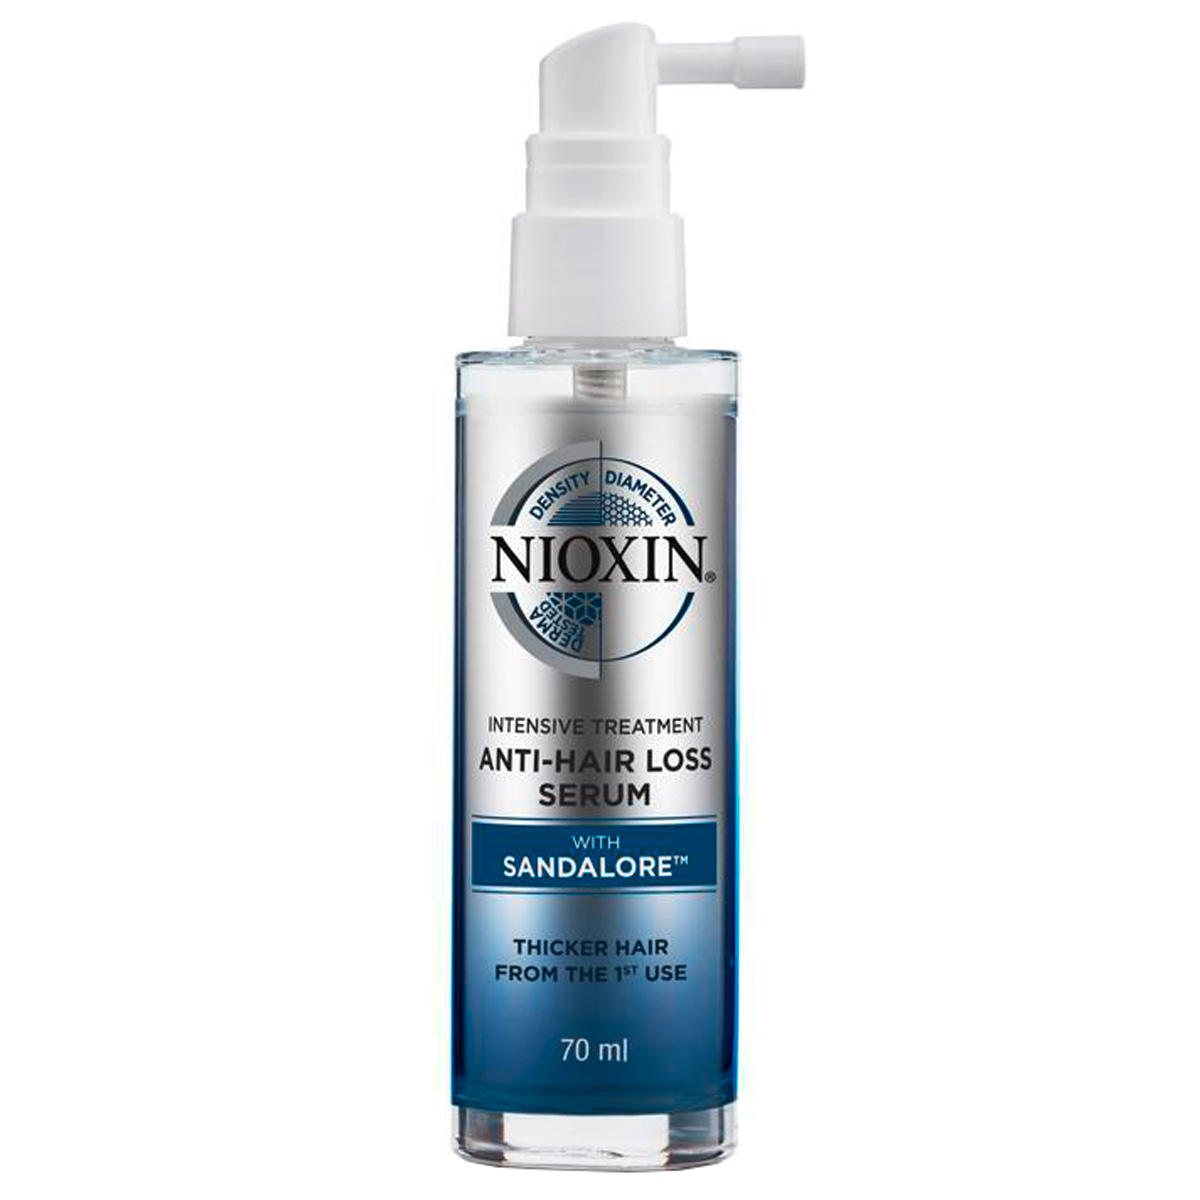 Nioxin Anti-Hair Loss Serum 70 ml - 1